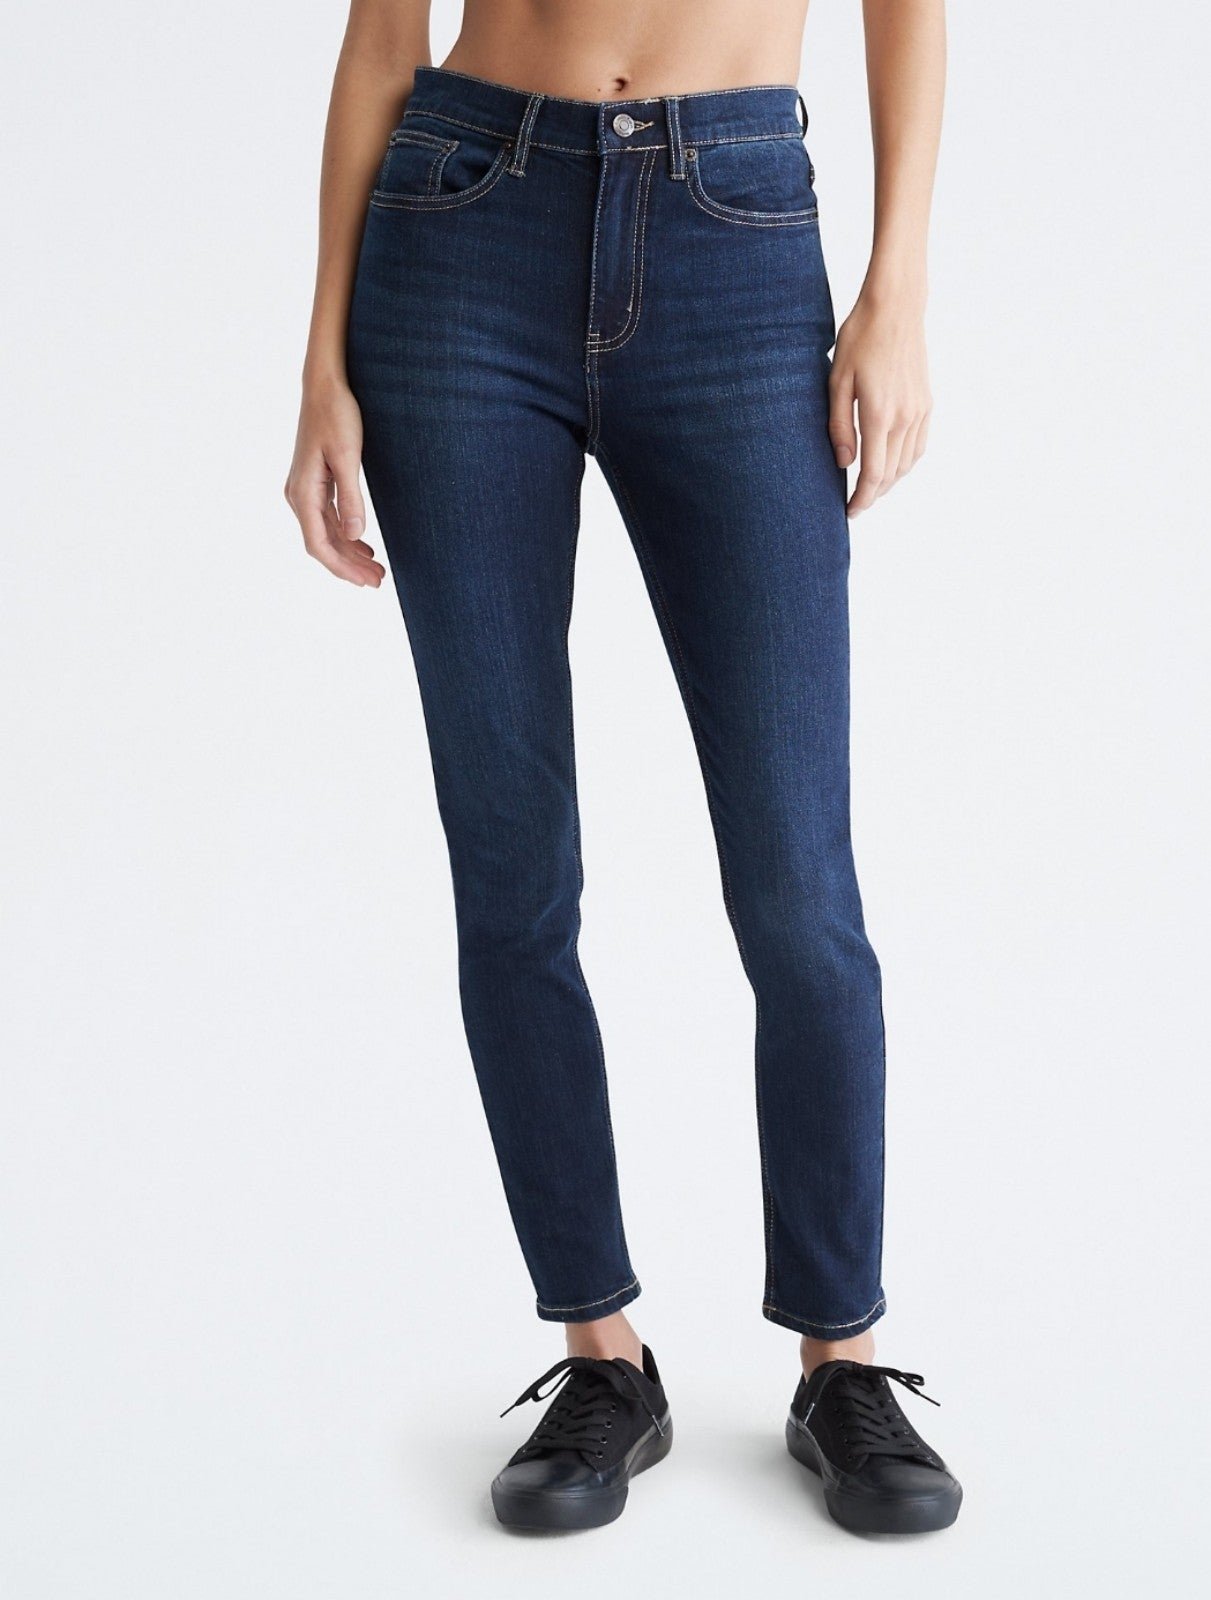 Elegant Skinny Fit High Rise Comfort Stretch Jeans nvV8hEv1q best sale